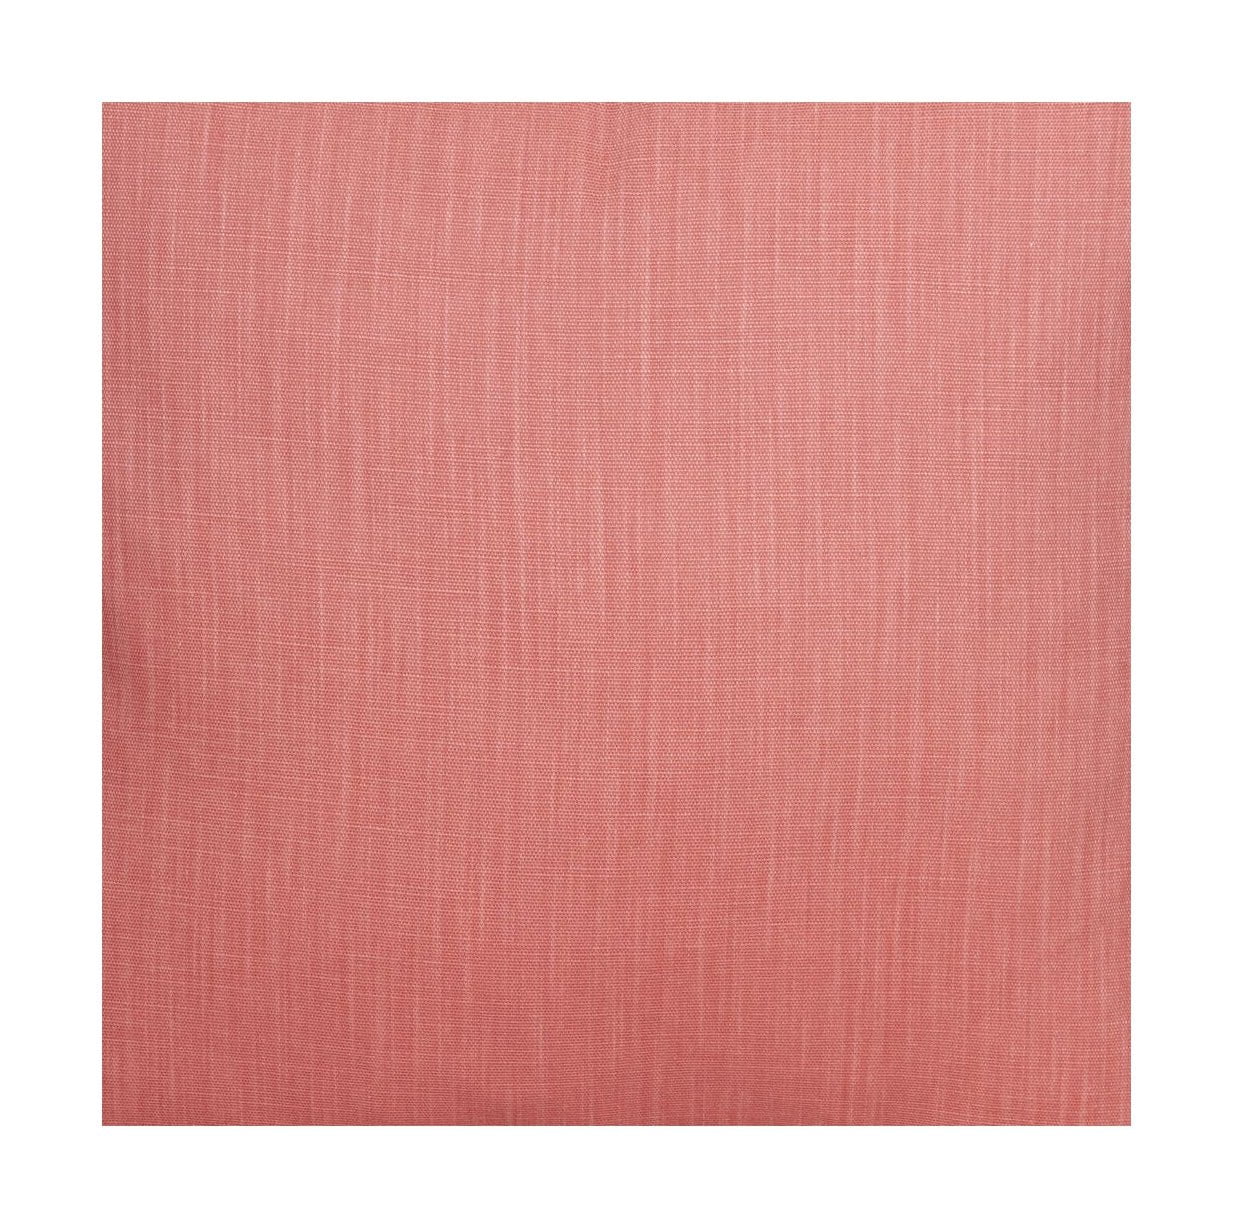 Larghezza del tessuto Spira Klotz 150 cm (prezzo per metro), Rouge